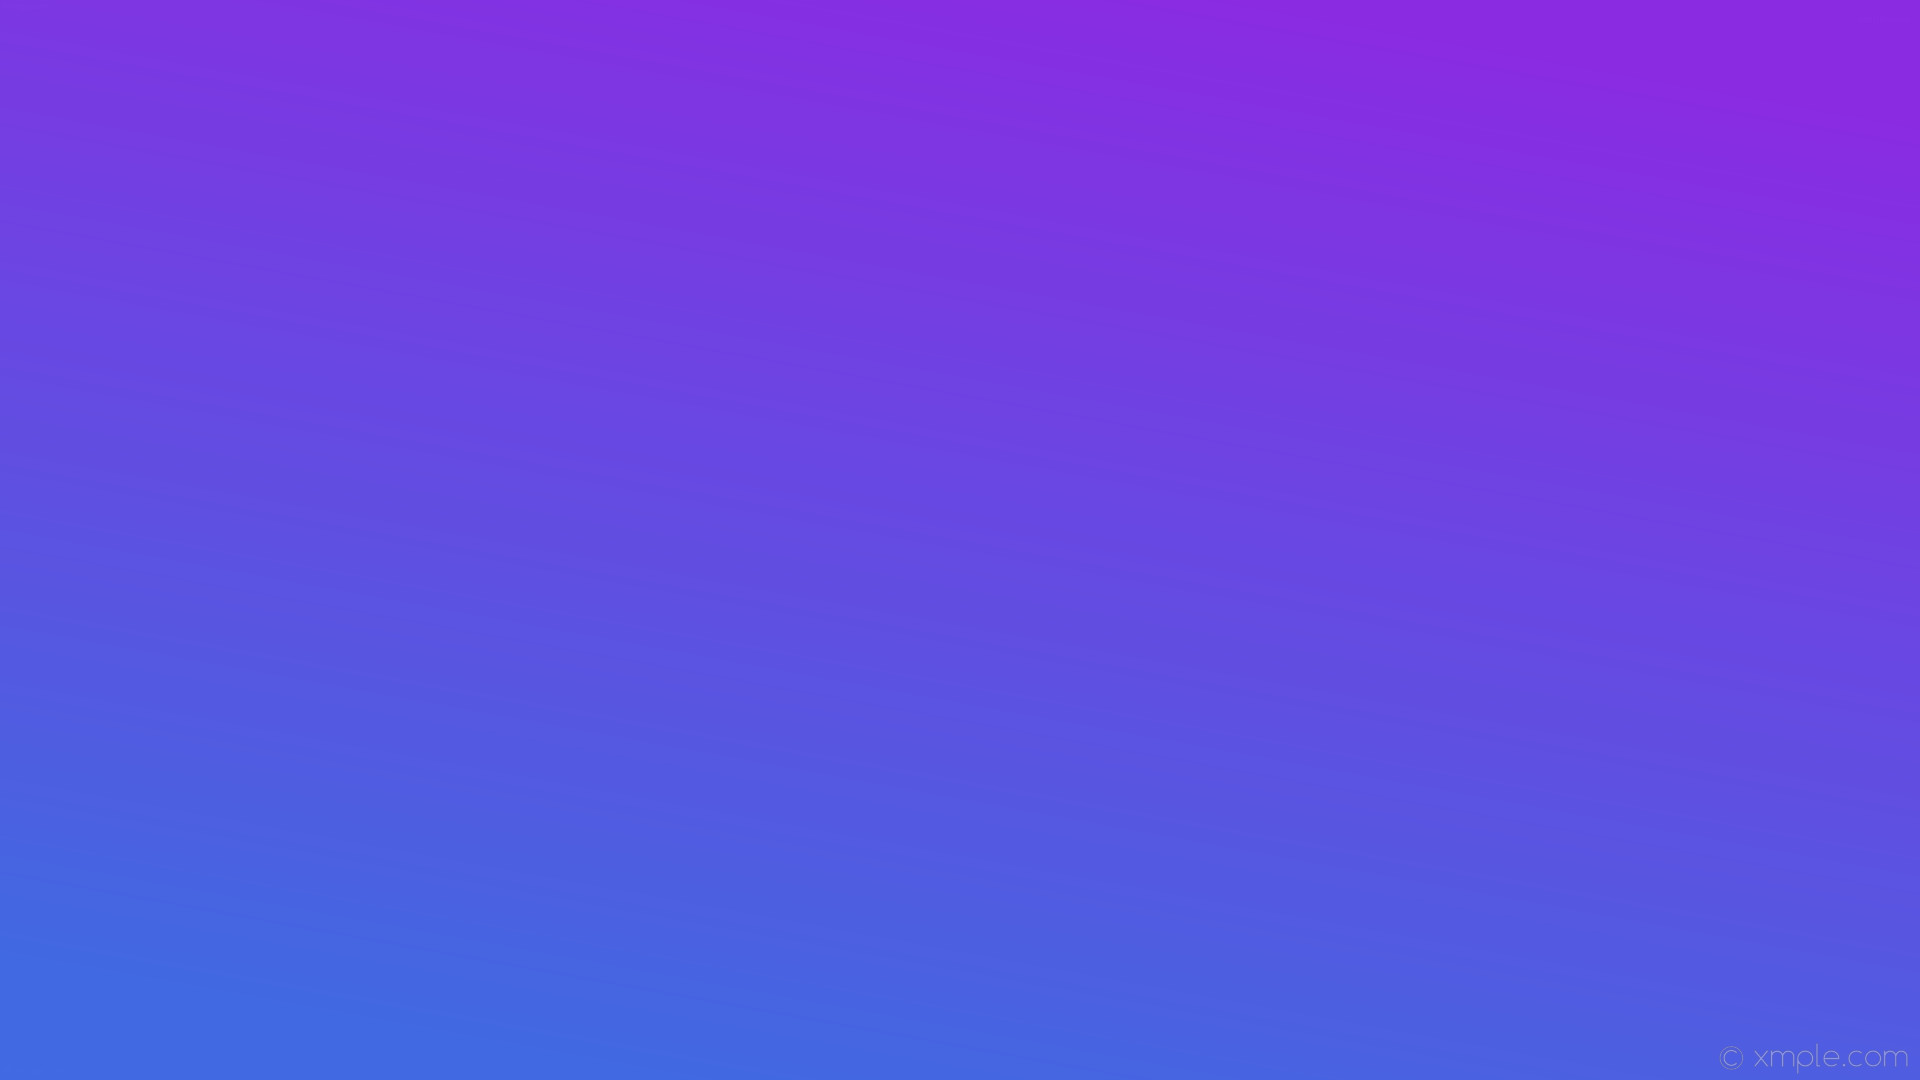 1920x1080 wallpaper blue linear gradient purple blue violet royal blue #8a2be2  #4169e1 60Â°